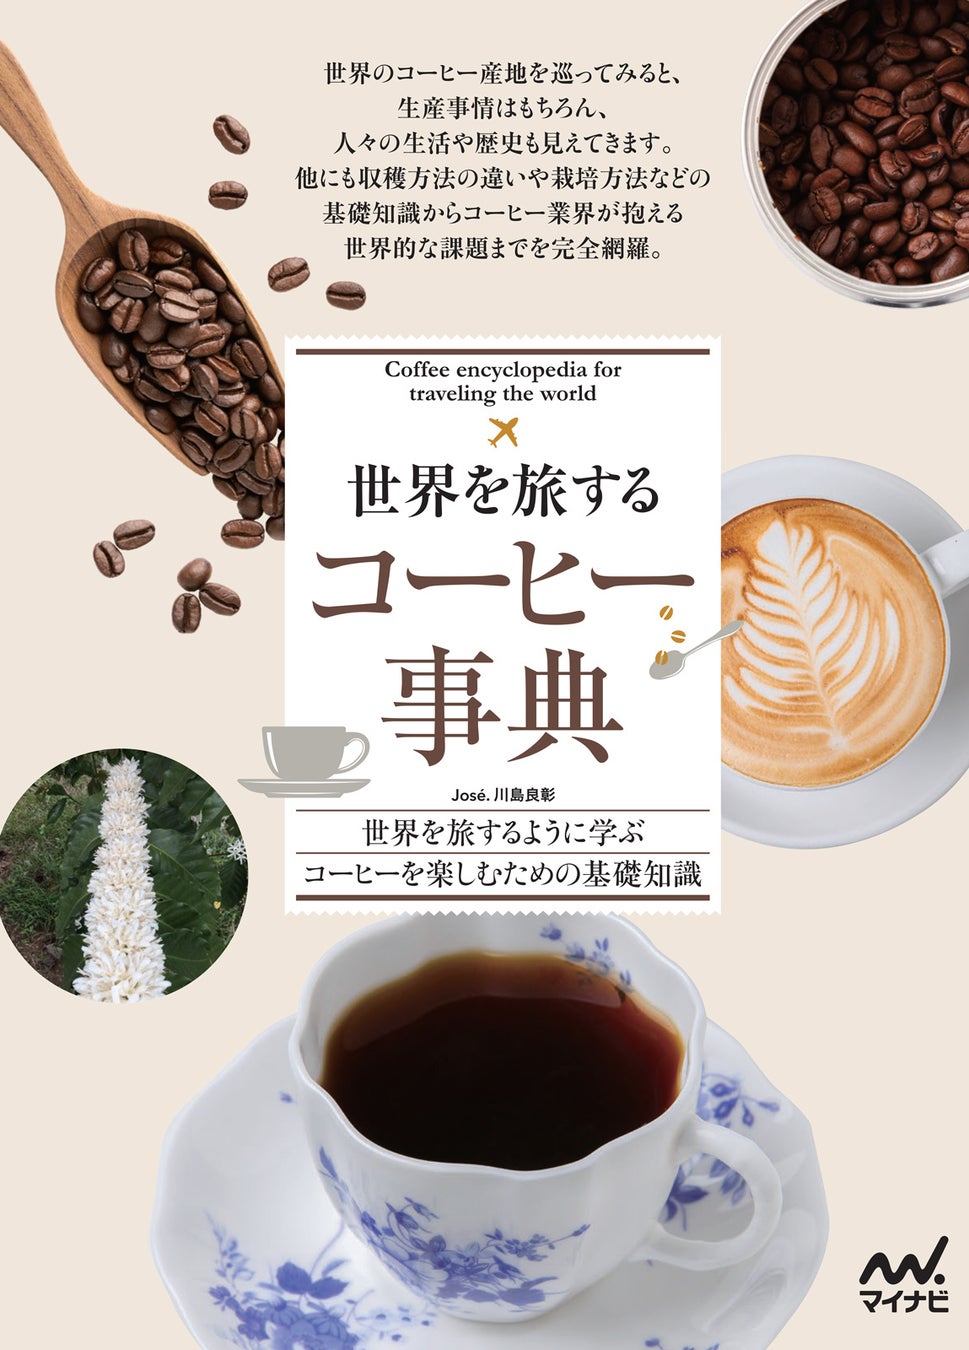 コーヒーハンター José. 川島良彰 新刊！世界を旅するように学ぶ、コーヒーを楽しむための基礎知識「世界を旅するコーヒー事典」